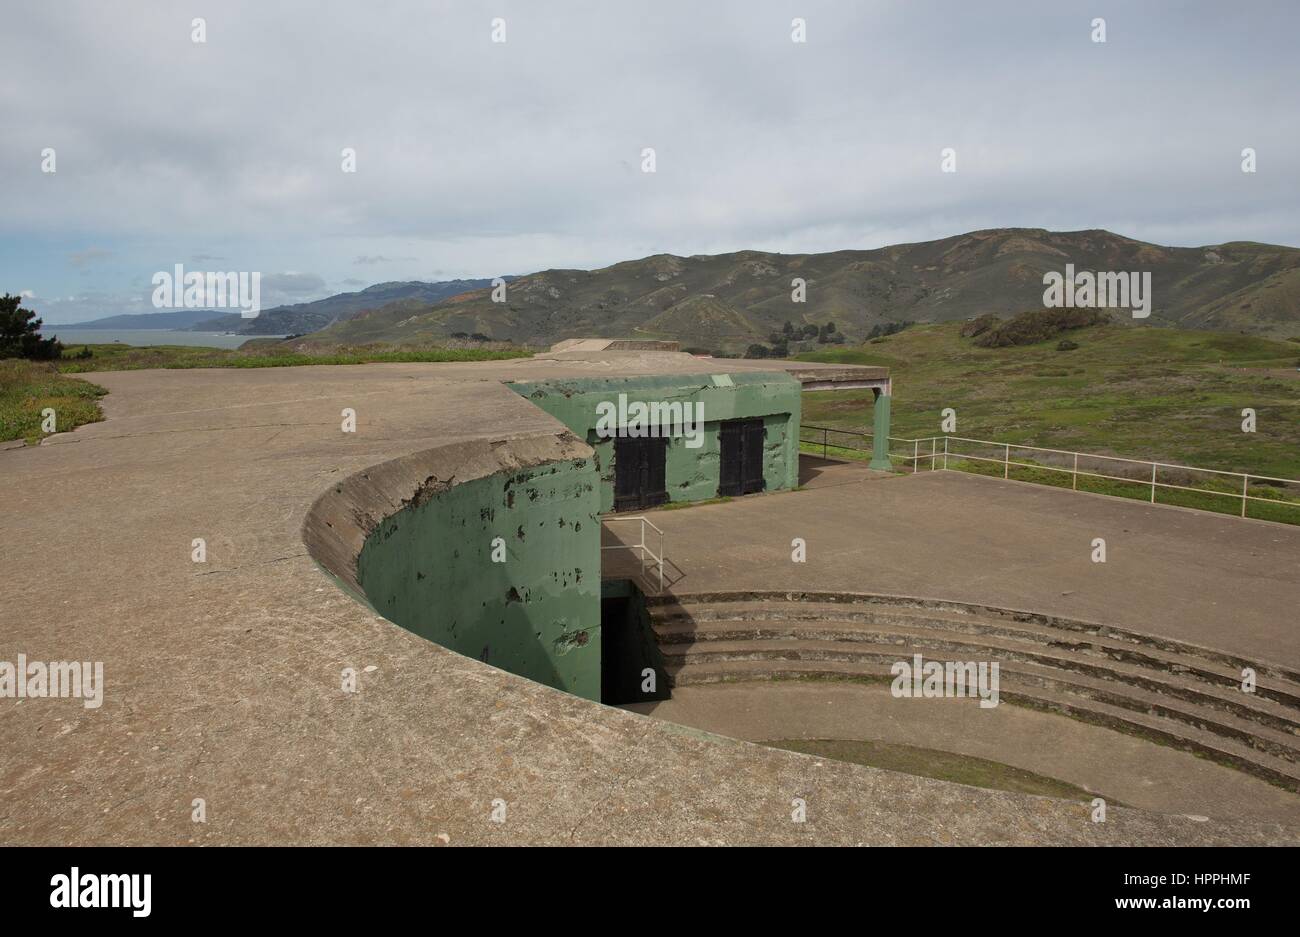 Batería Batería Mendell, militares abandonados y bunker en Marin, cerca de San Francisco, CA, EE.UU. Foto de stock